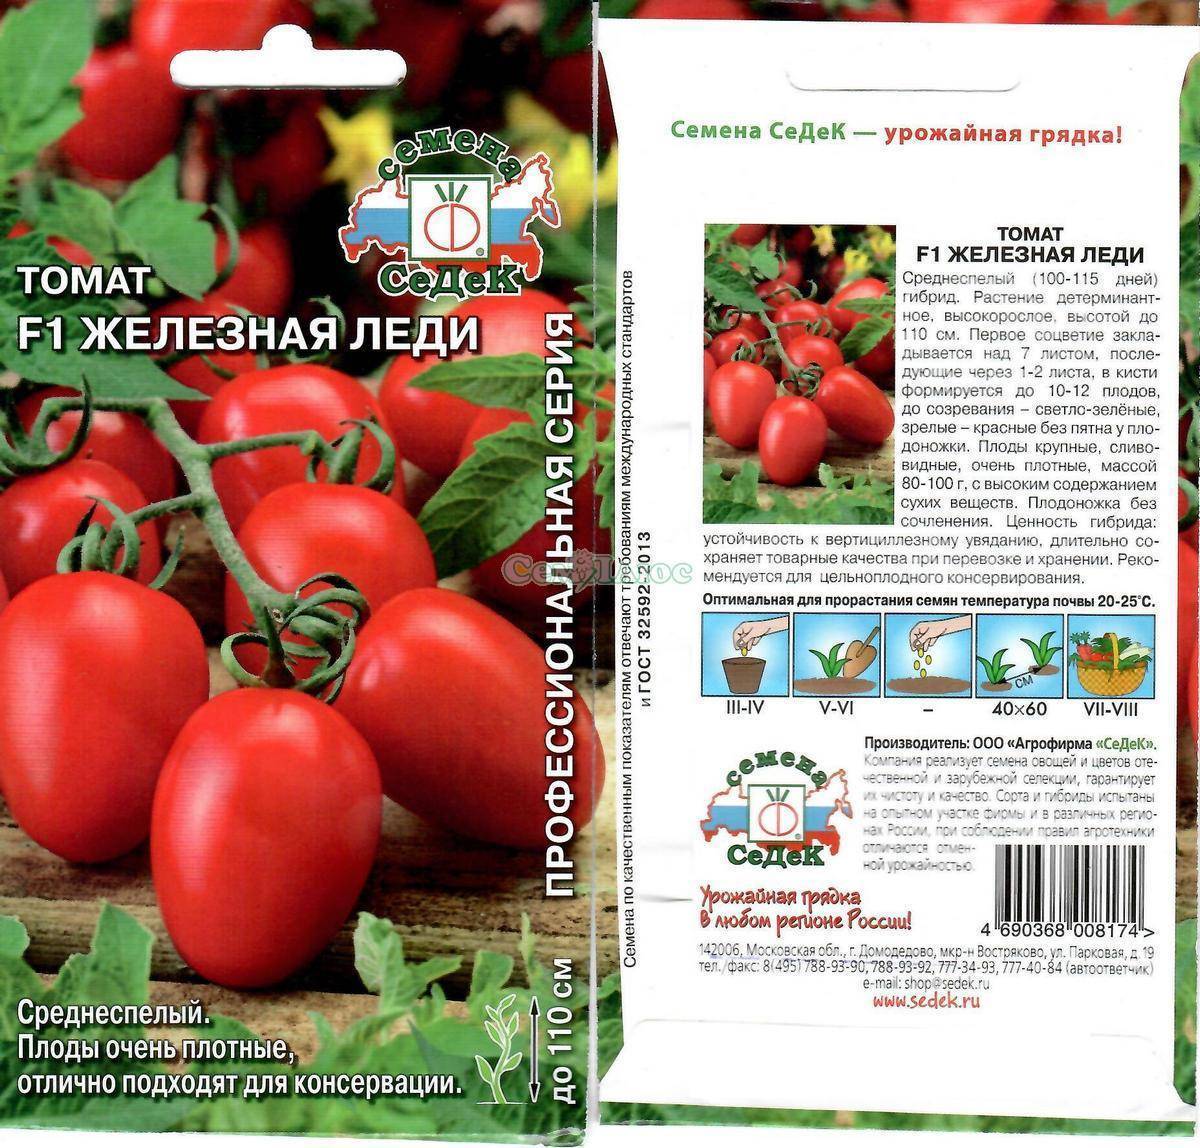 Поздние сорта томатов для открытого грунта: описание и фото